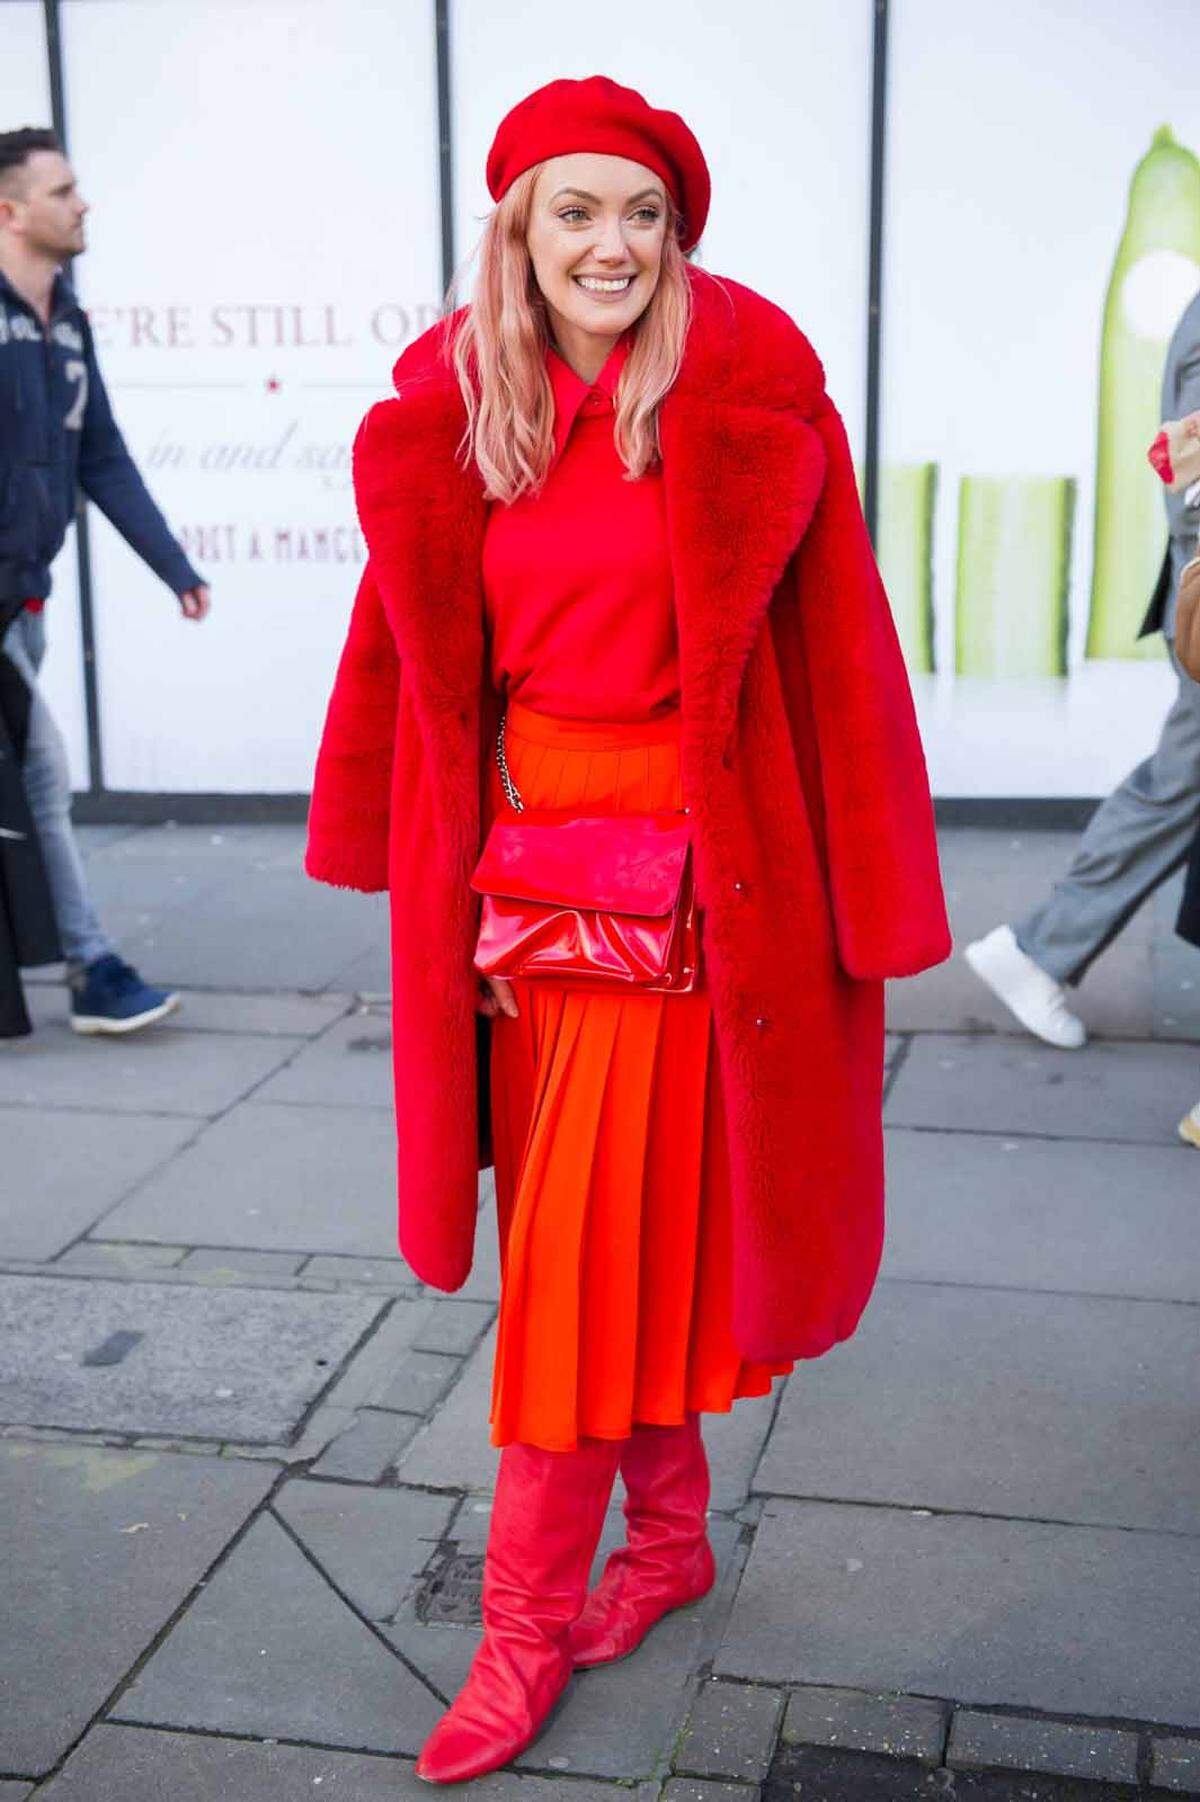 Outfits mit Signalwirkung: Bei den Streetstyle-Looks in London geht es vor allem um eines - aufzufallen. Und da macht sich ein Look ganz in Rot natürlich gut.